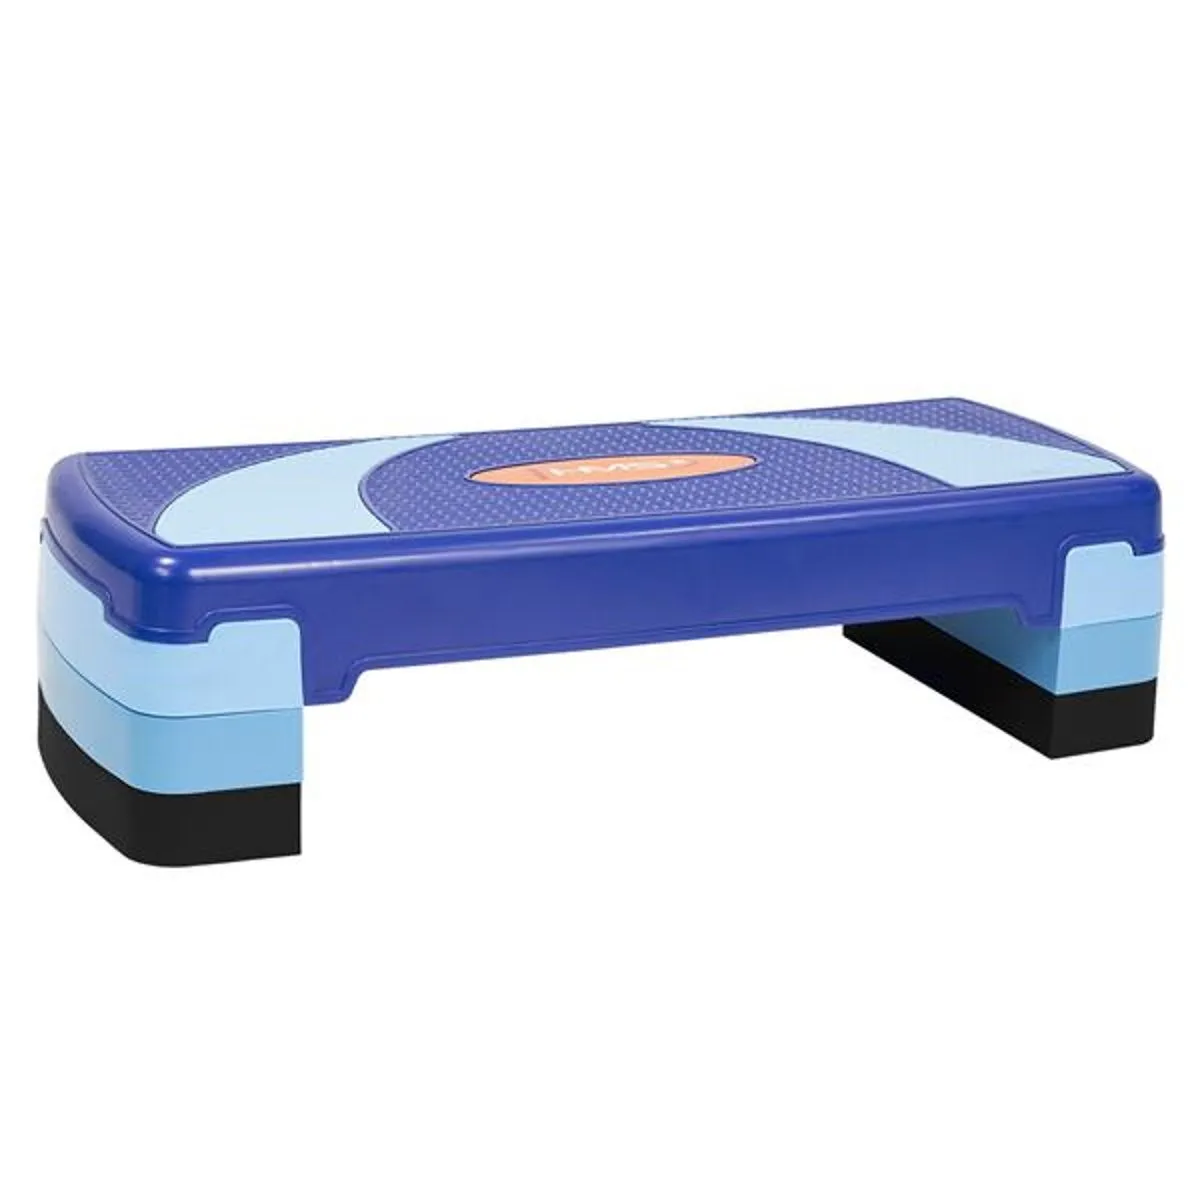 Stepper aerobic - planche de step bleue reglable en hauteur 08-03111BL